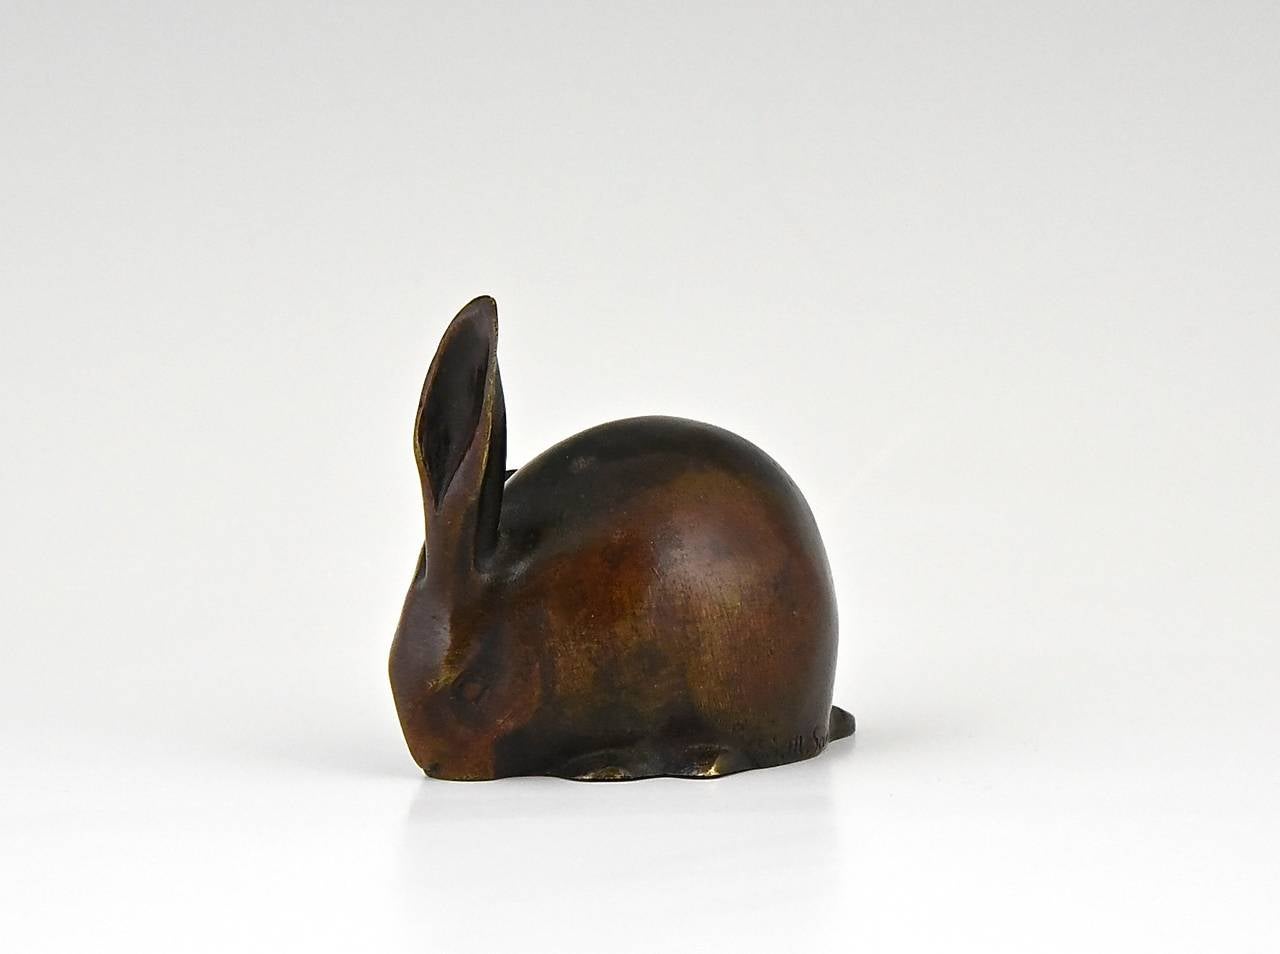 French Art Deco bronze sculpture rabbit by Eduard Marcel Sandoz, Susse Freres 1920